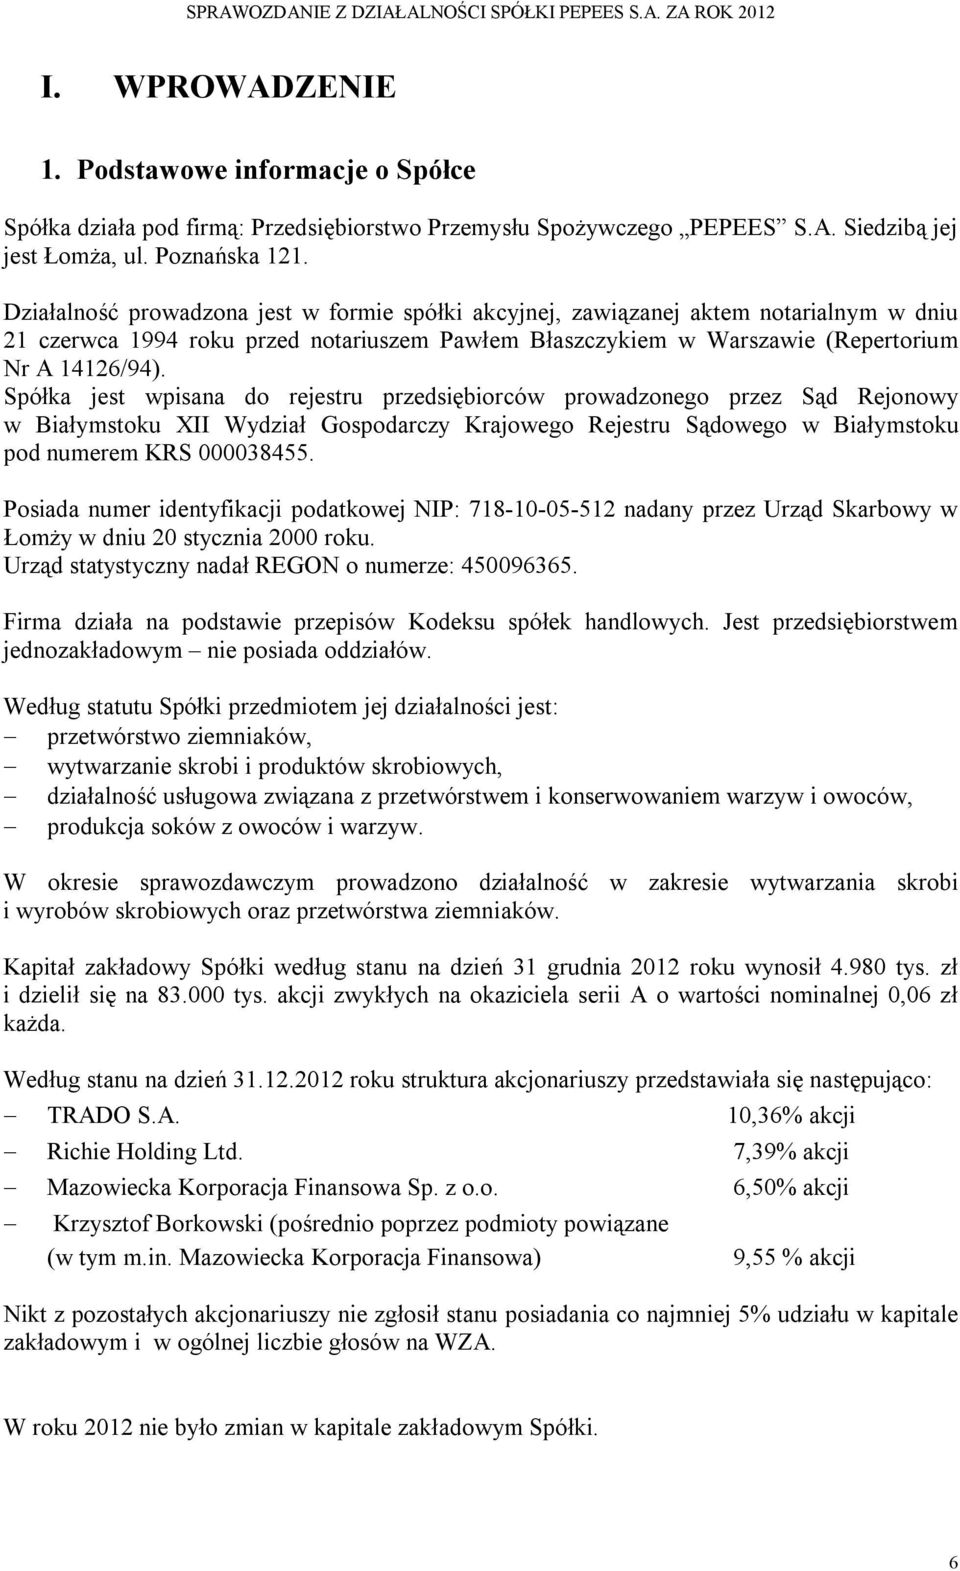 Spółka jest wpisana do rejestru przedsiębiorców prowadzonego przez Sąd Rejonowy w Białymstoku XII Wydział Gospodarczy Krajowego Rejestru Sądowego w Białymstoku pod numerem KRS 000038455.